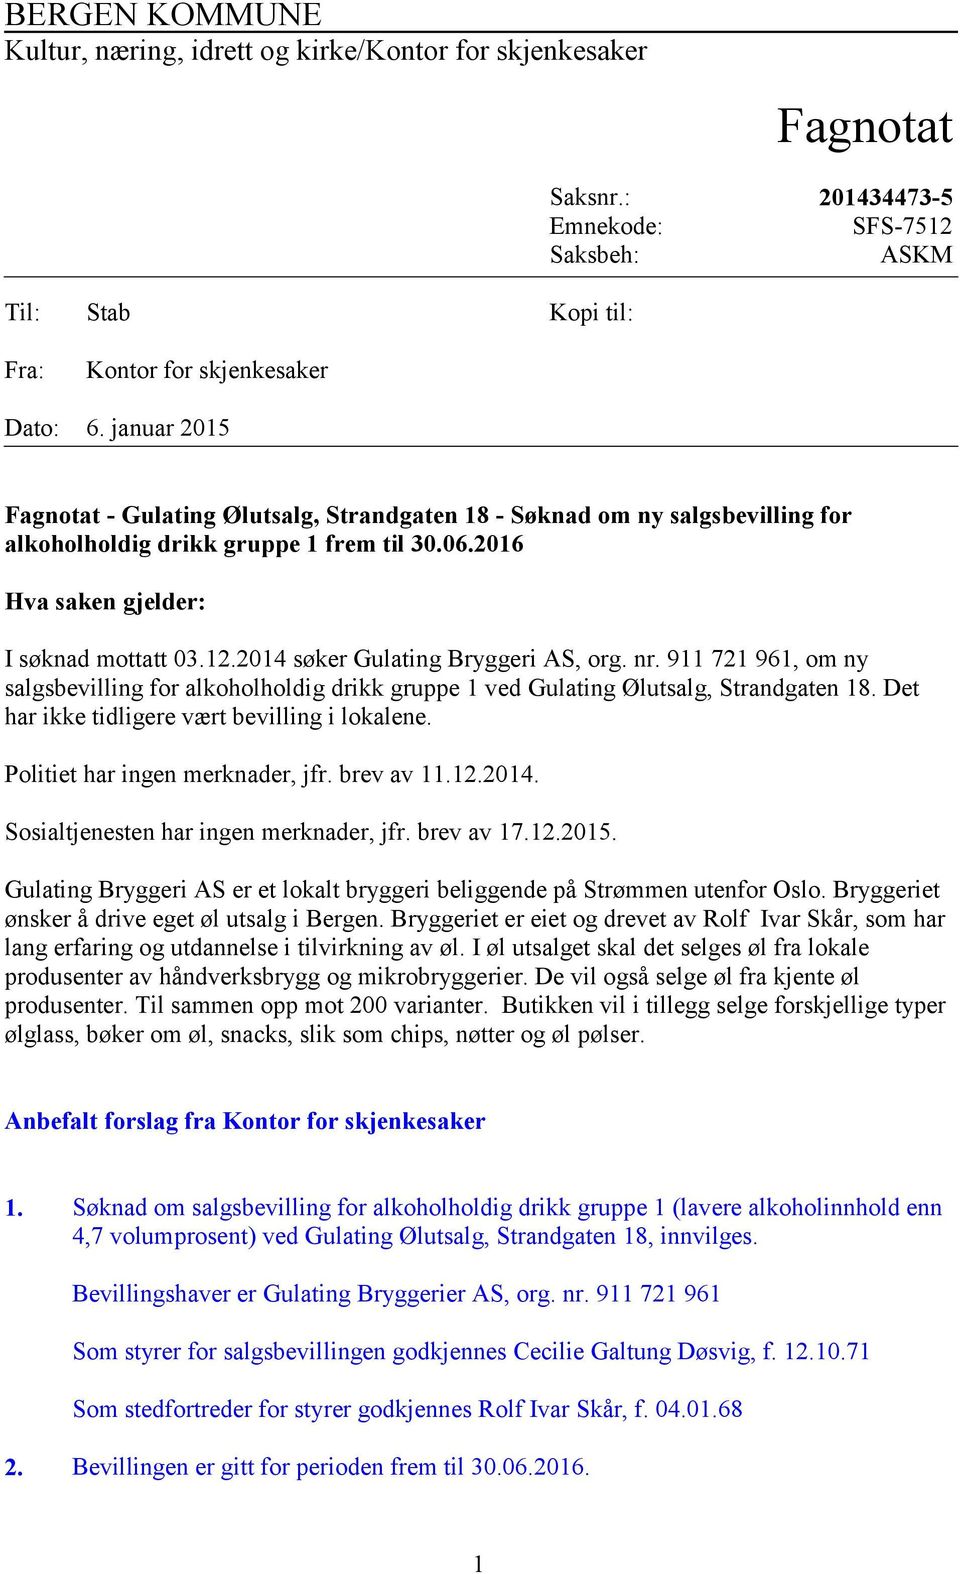 2014 søker Gulating Bryggeri AS, org. nr. 911 721 961, om ny salgsbevilling for alkoholholdig drikk gruppe 1 ved Gulating Ølutsalg, Strandgaten 18. Det har ikke tidligere vært bevilling i lokalene.